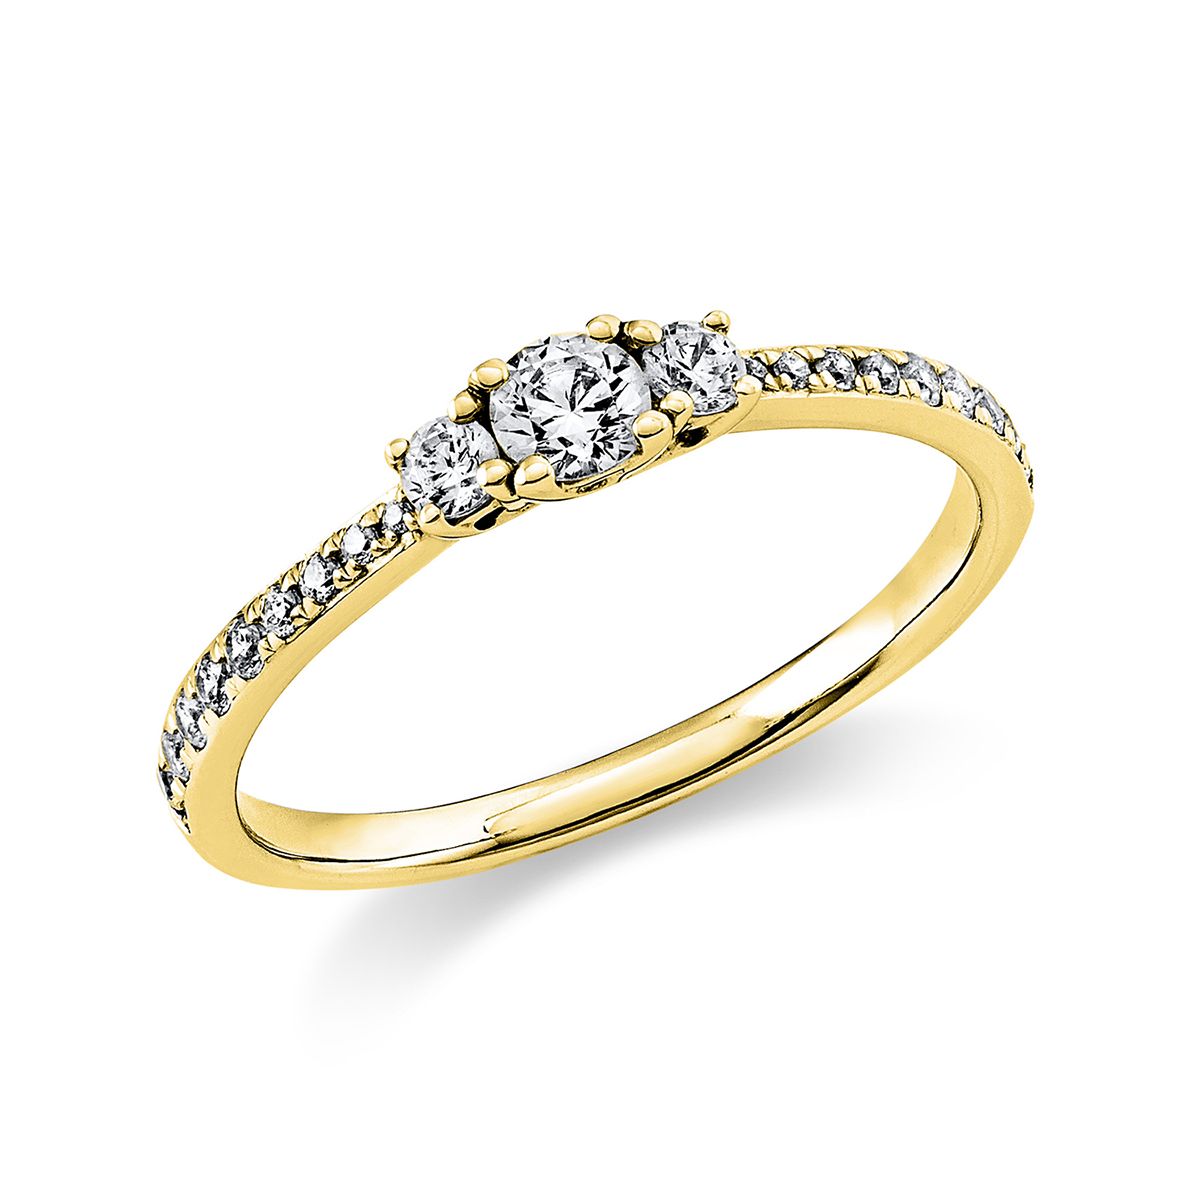 Solitär-Ring 4-Griff-Fassung 585/14K Gelbgold, Diamant 0.37 ct.